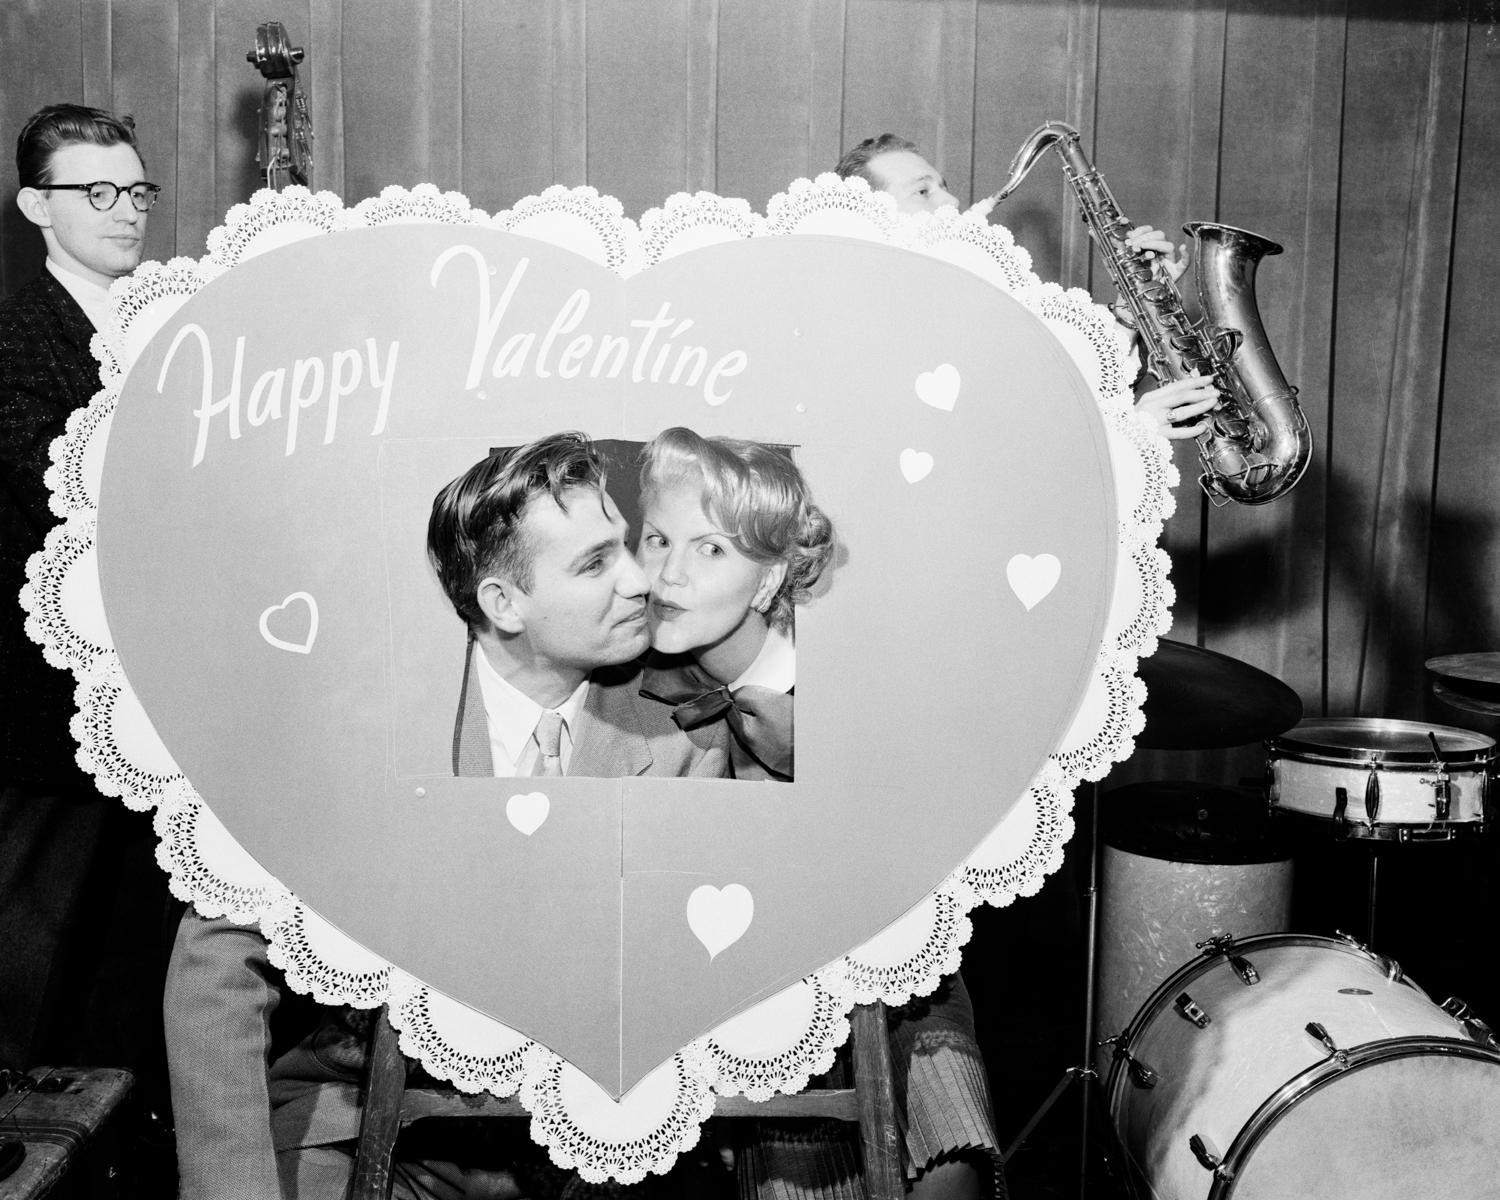 Jennifer Greenburg Black and White Photograph – Er hat keinen glücklichen Valentin gehabt